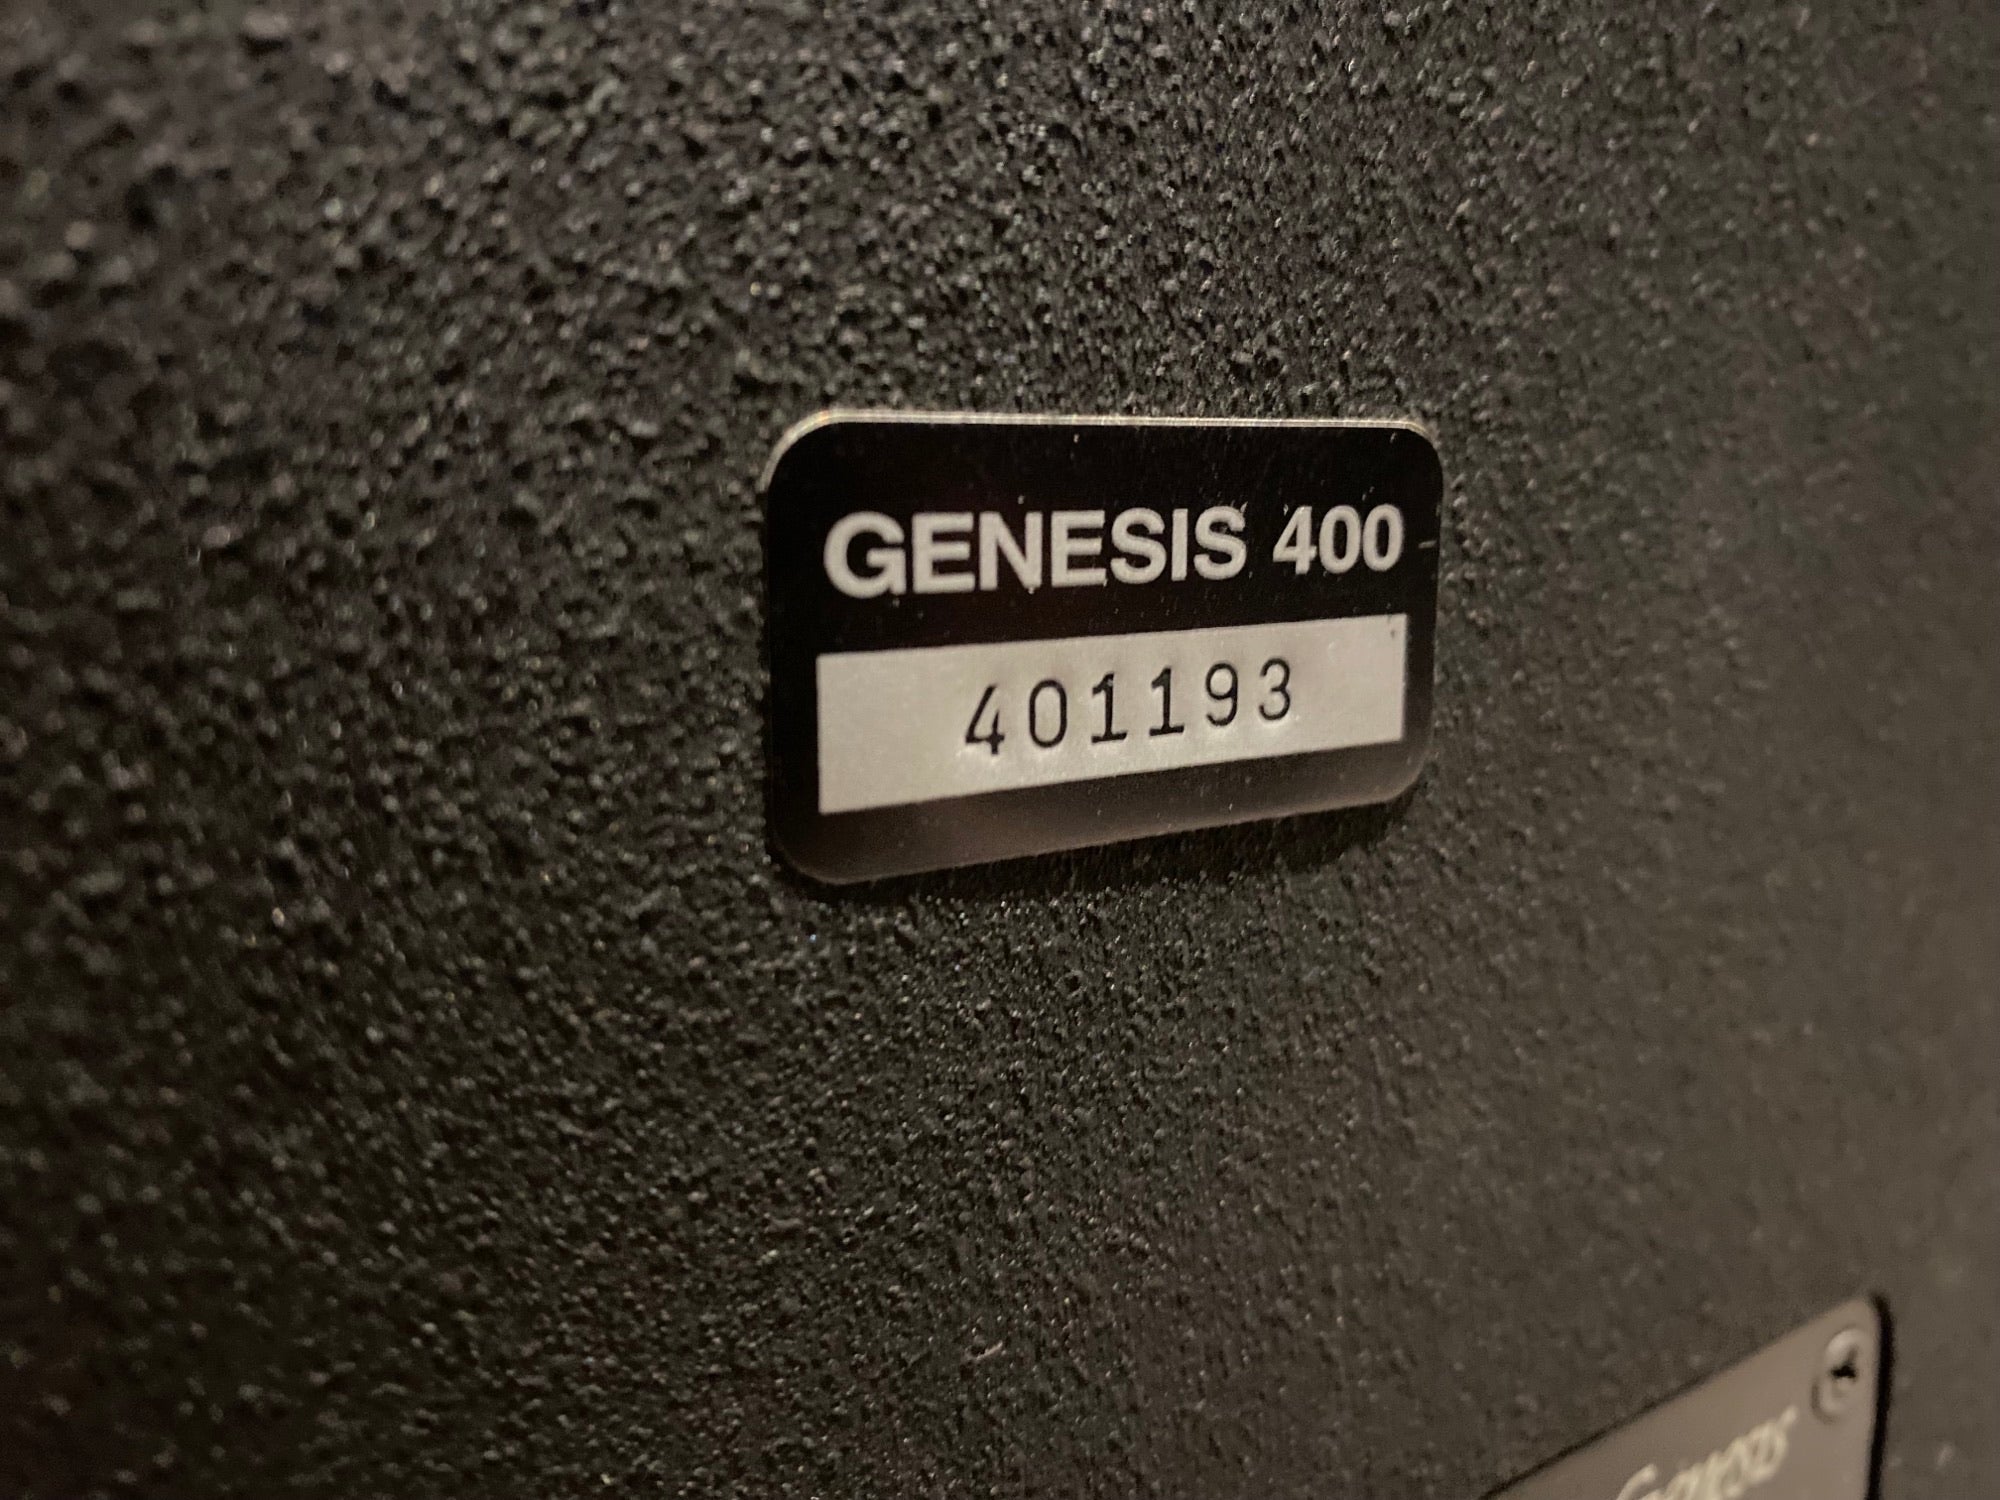 Genesis 400 Series Floorstanding Speakers - Consignment